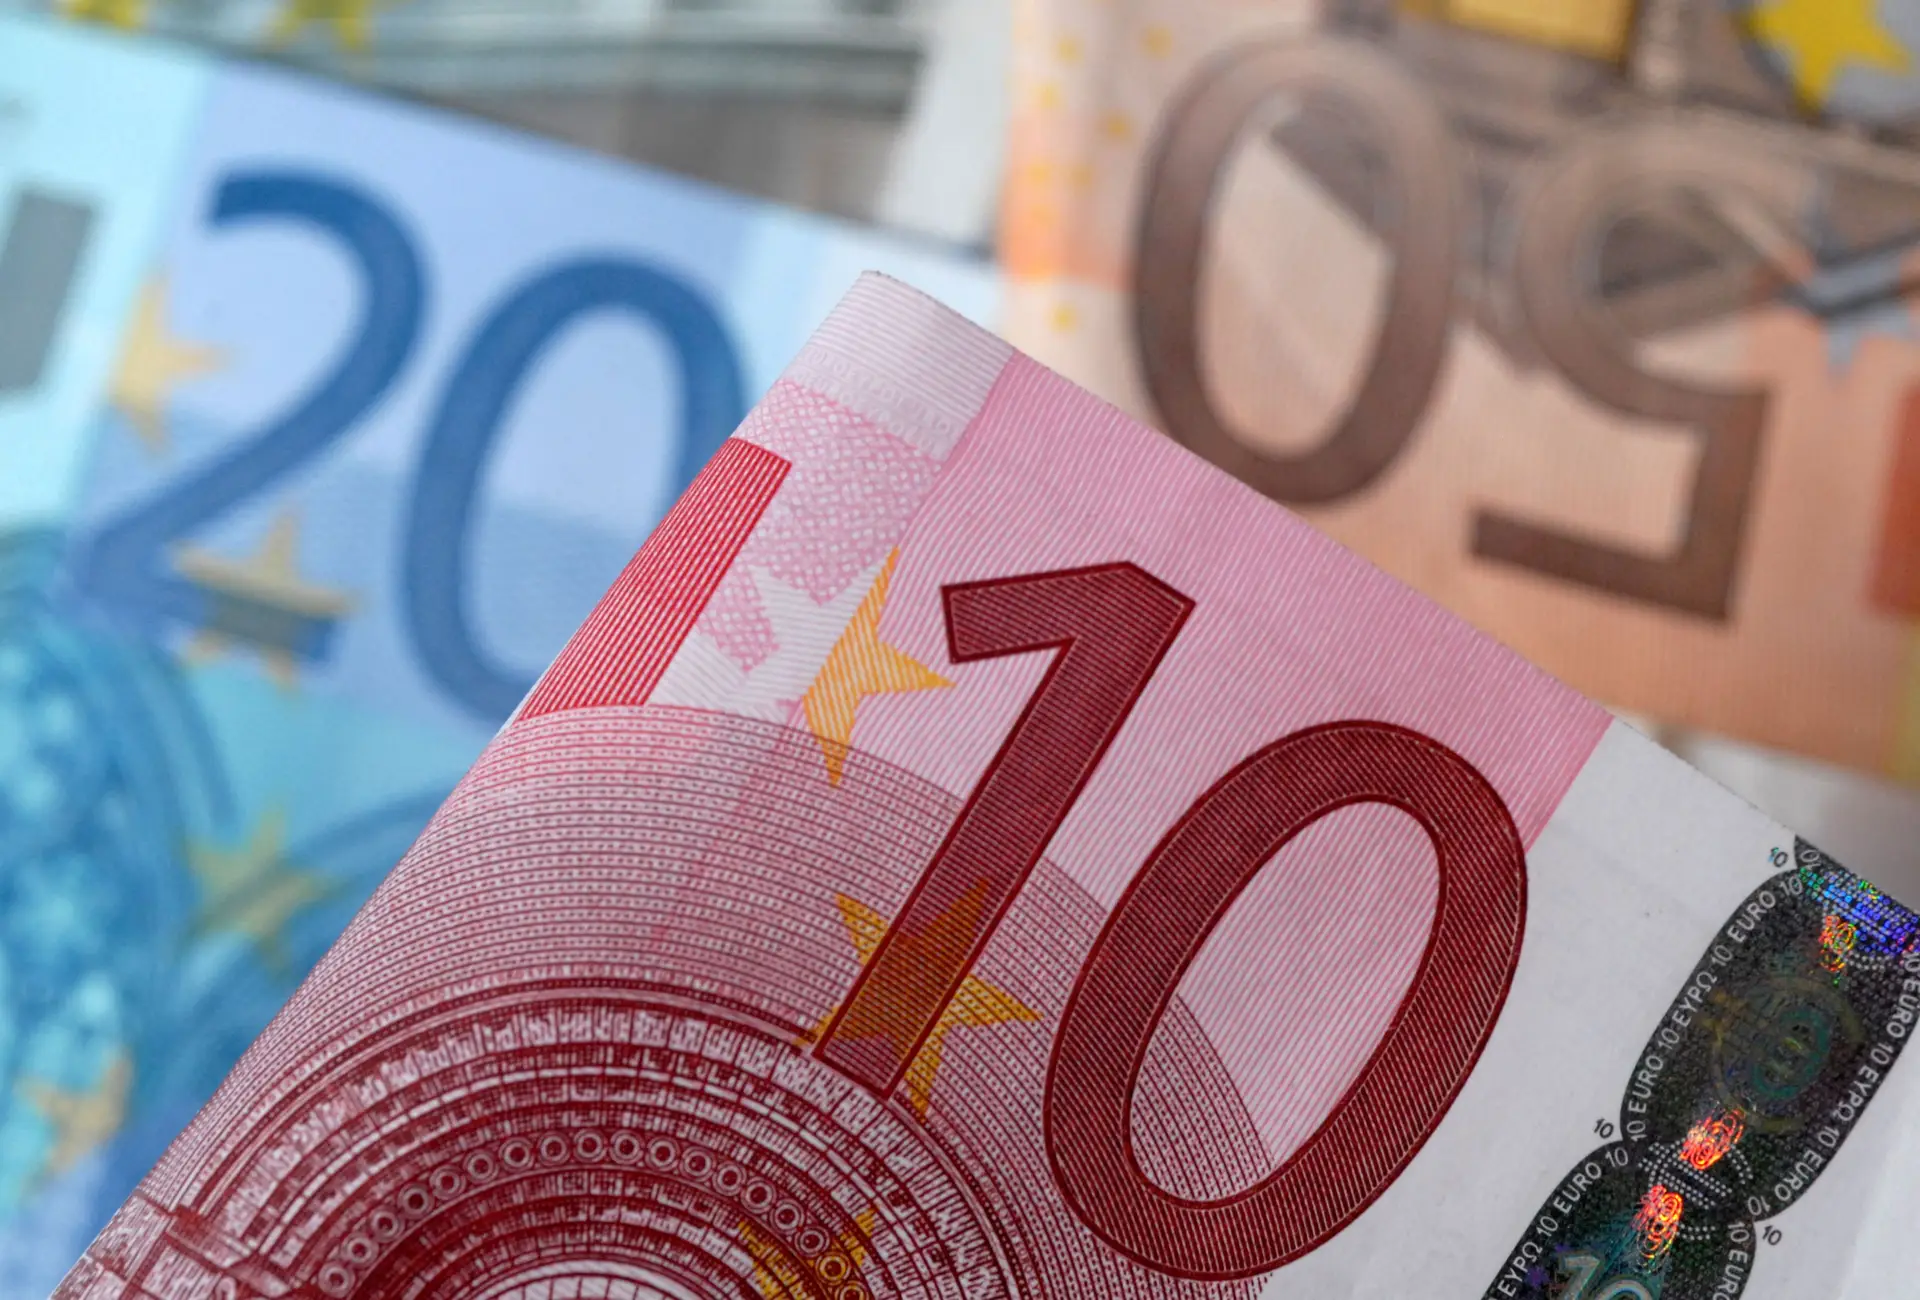 Novos créditos ao consumo caem 2,7% entre junho e julho, para 635,9 milhões de euros